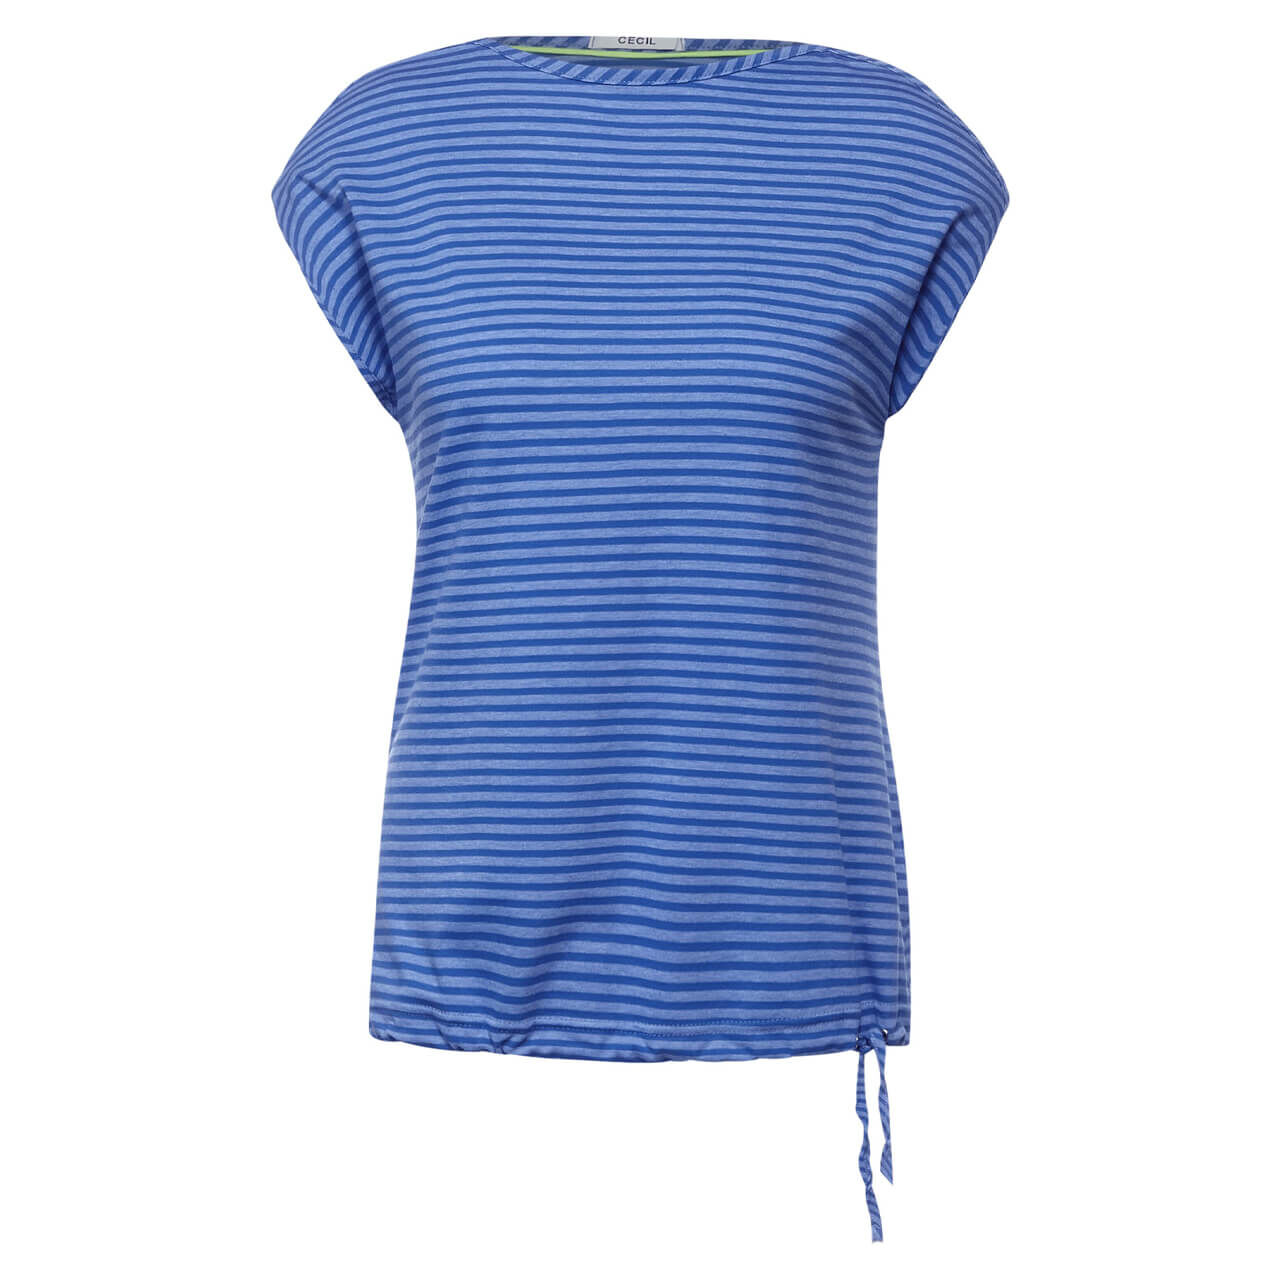 Cecil Overdye Stripe T-Shirt für Damen in Blau gestreift, FarbNr.: 23646